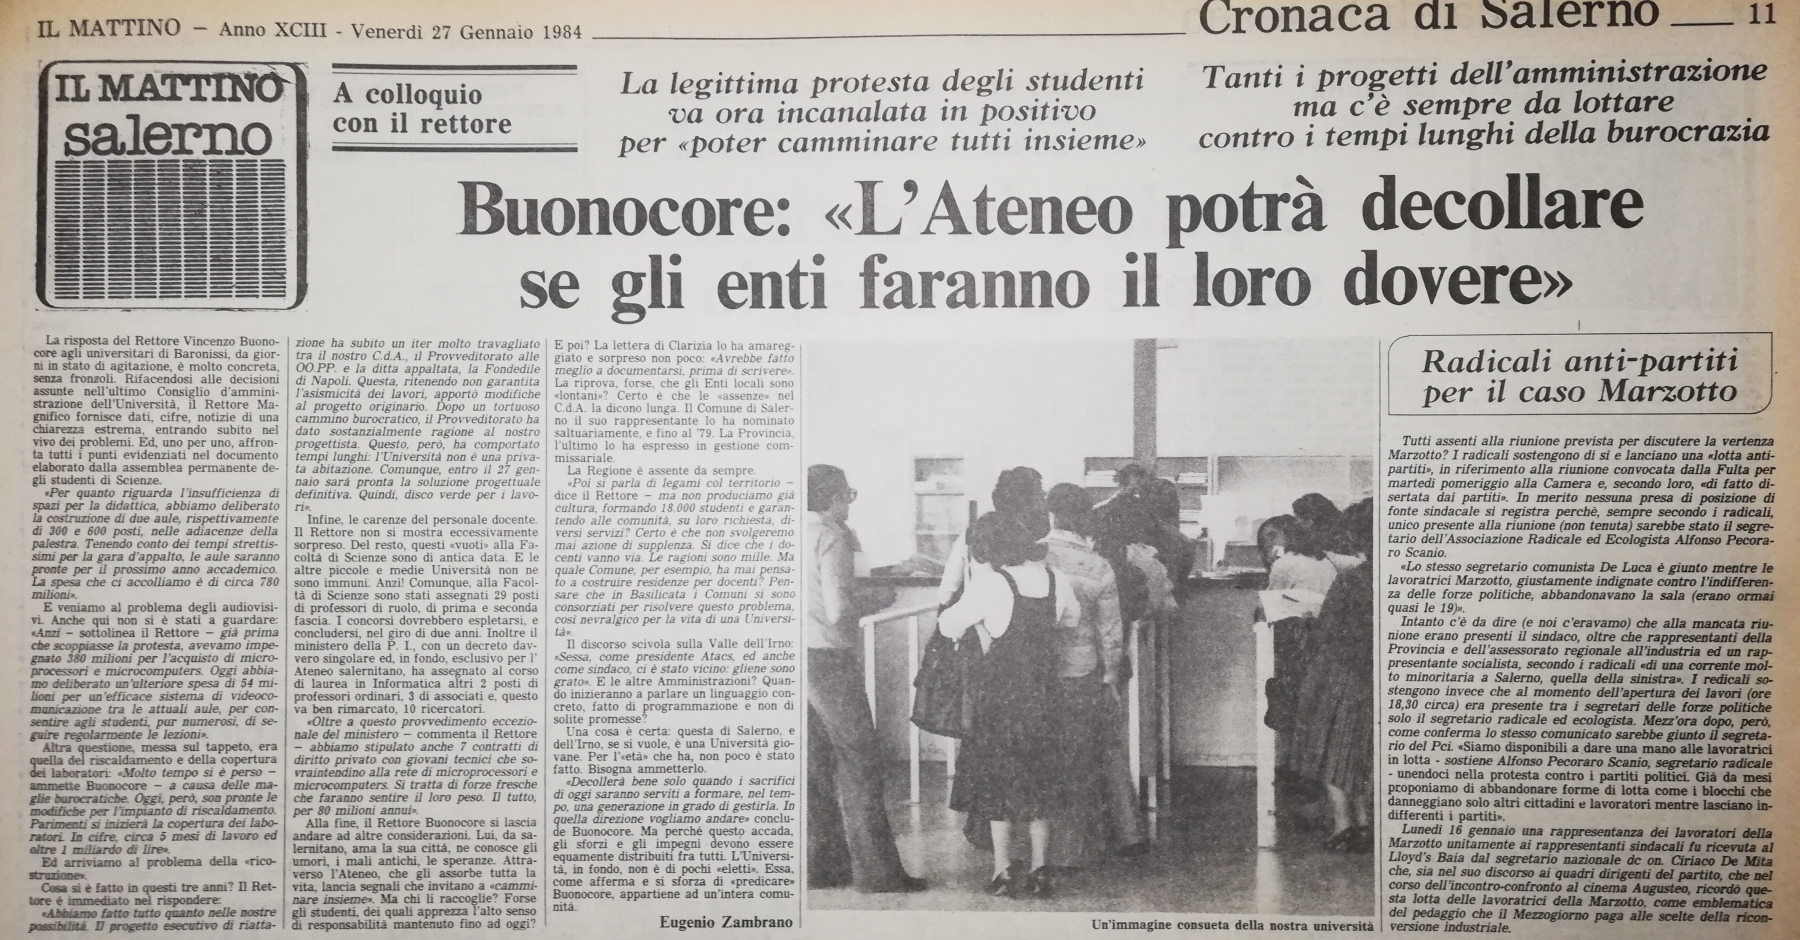 Il Mattino, 27 gennaio 1984, Cronaca di Salerno, p. 11